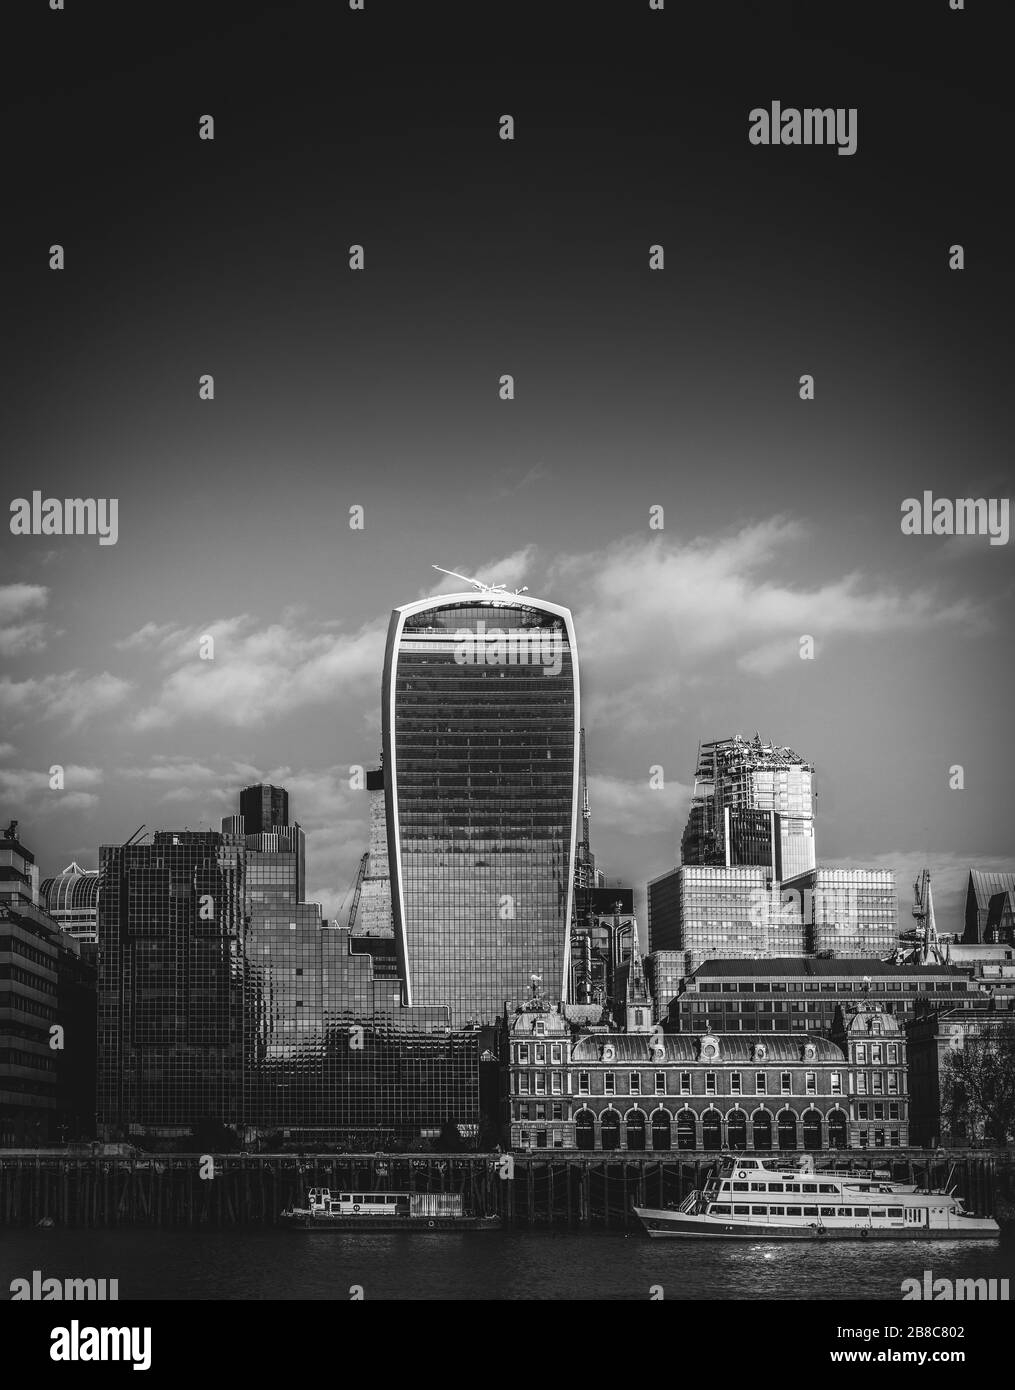 La Tamise monochrome et le quartier financier de la ville de Londres arrière-plan avec espace de copie Banque D'Images